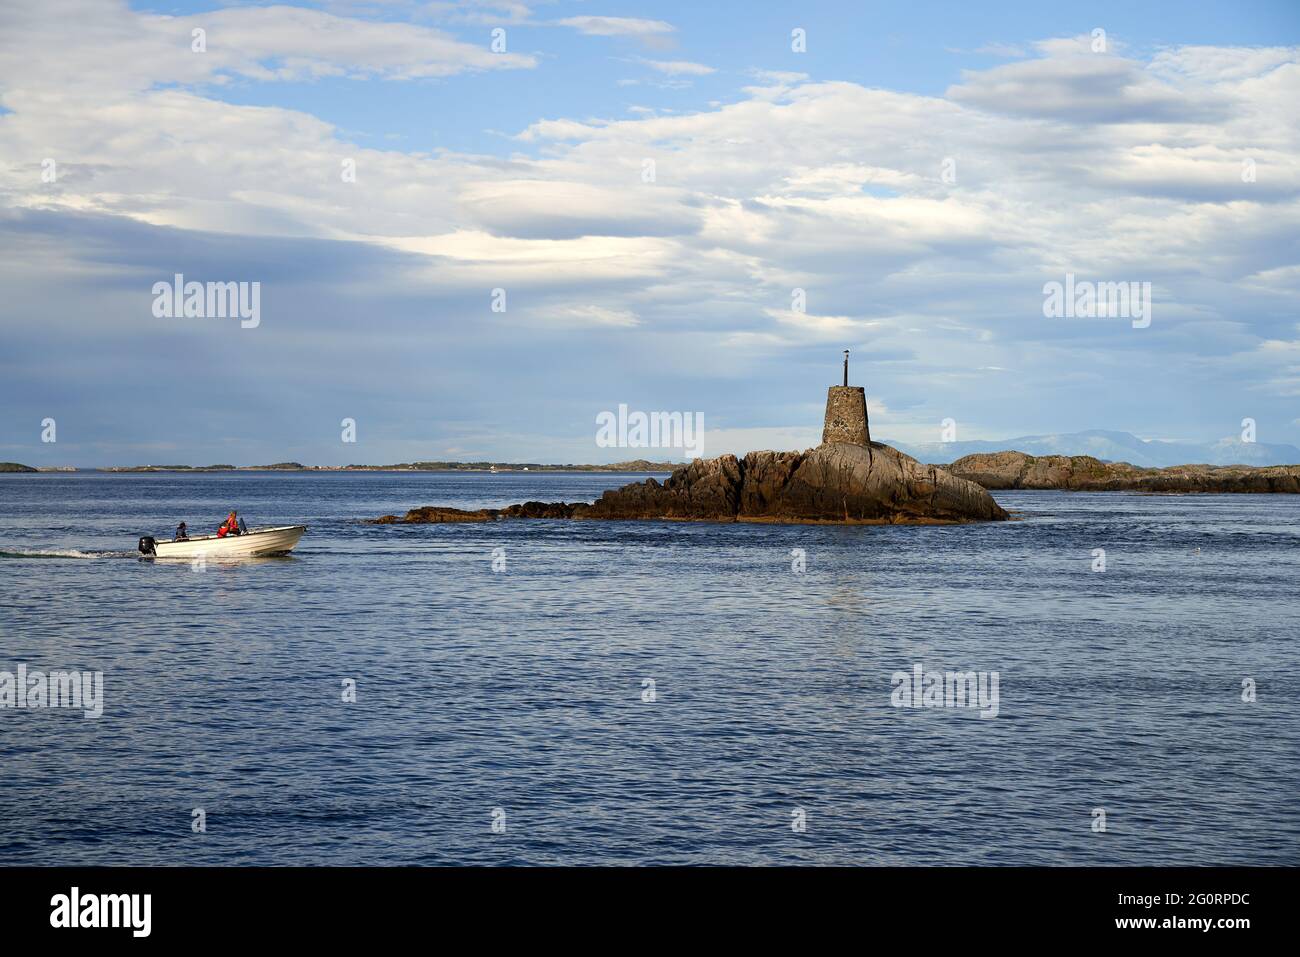 VEVANG, NORVEGIA - 28 luglio 2020: Una famiglia sta godendo una gita in barca tra le isole appartengono alla strada dell'Oceano Atlantico in Norvegia Foto Stock